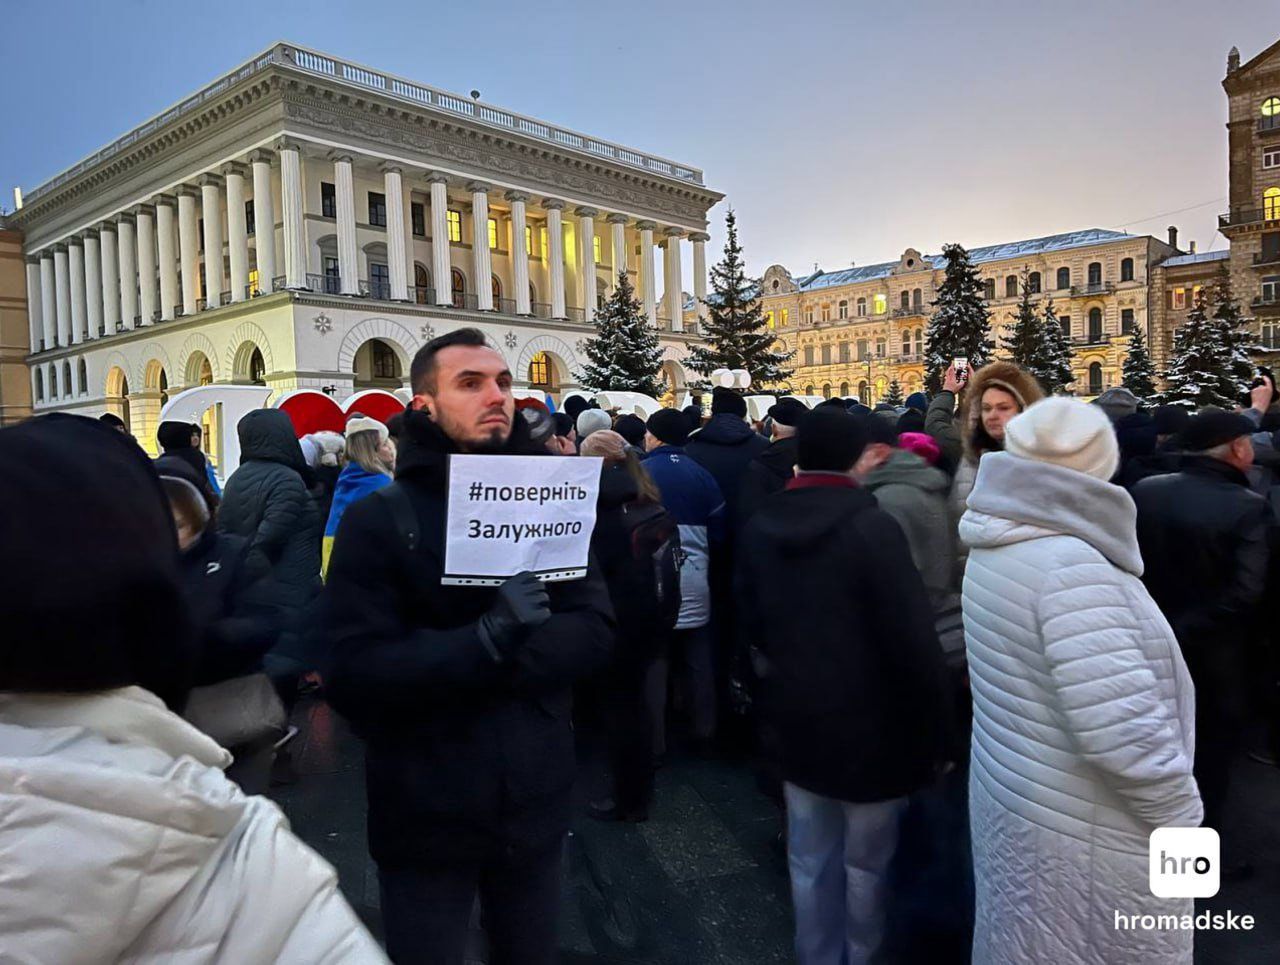 Protest in Kiev against the dismissal of Valeriy Zaluzhny. The man is holding a sign saying "reinstate Zaluzhny".